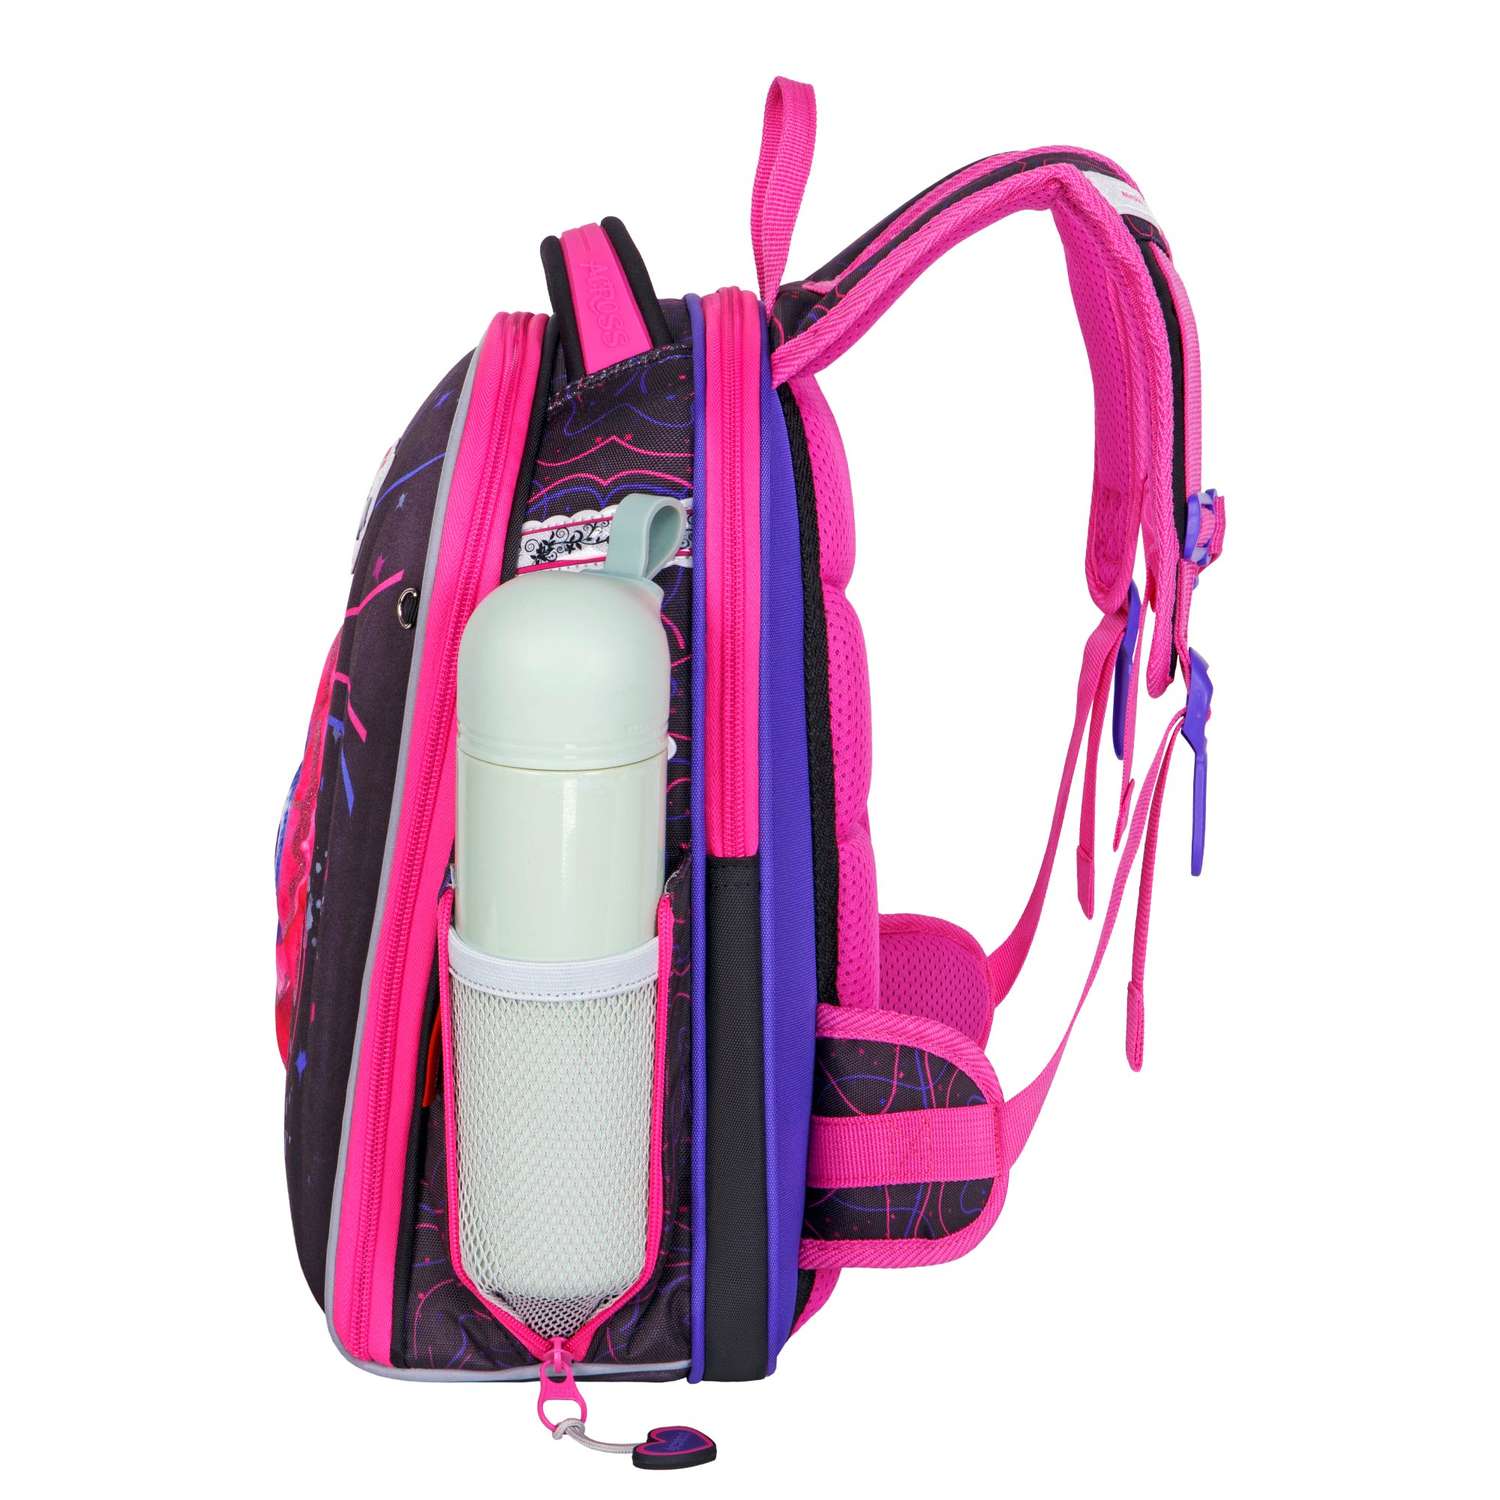 Рюкзак школьный ACROSS с наполнением: мешок для обуви пенал папка и брелок - фото 9